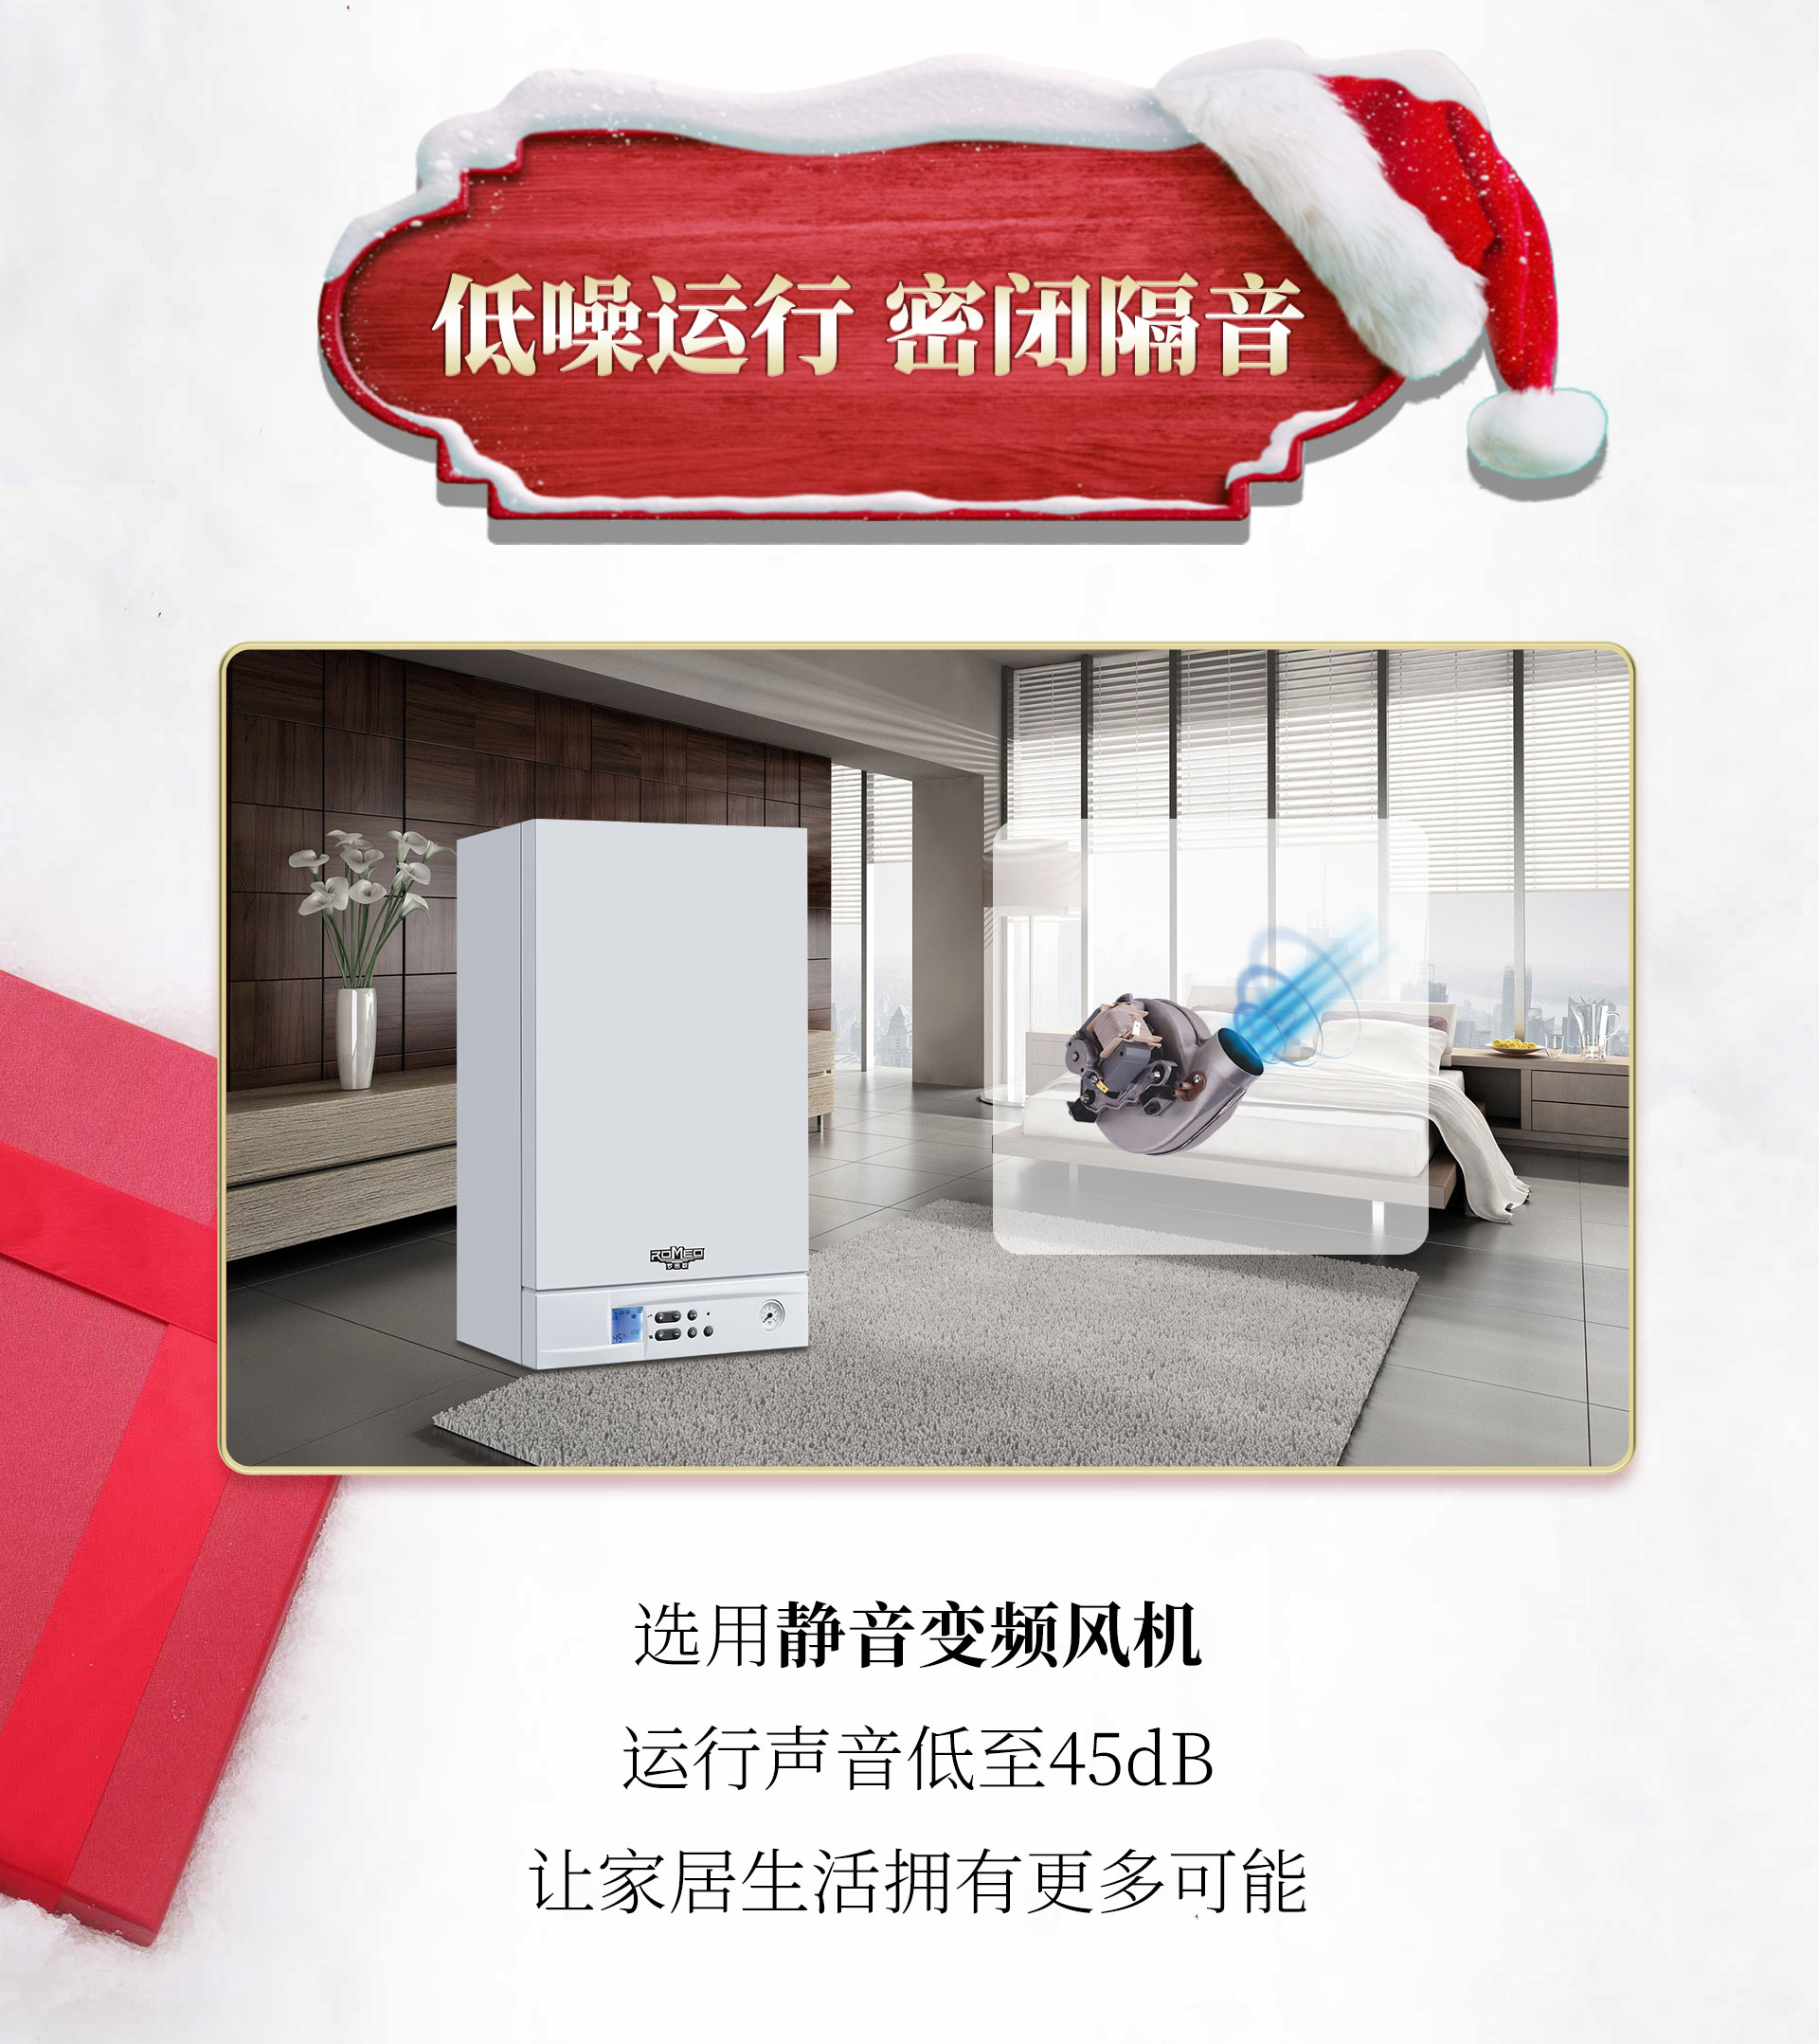 圣诞节礼物_05商用热水器、壁挂炉加盟、容积式热水炉